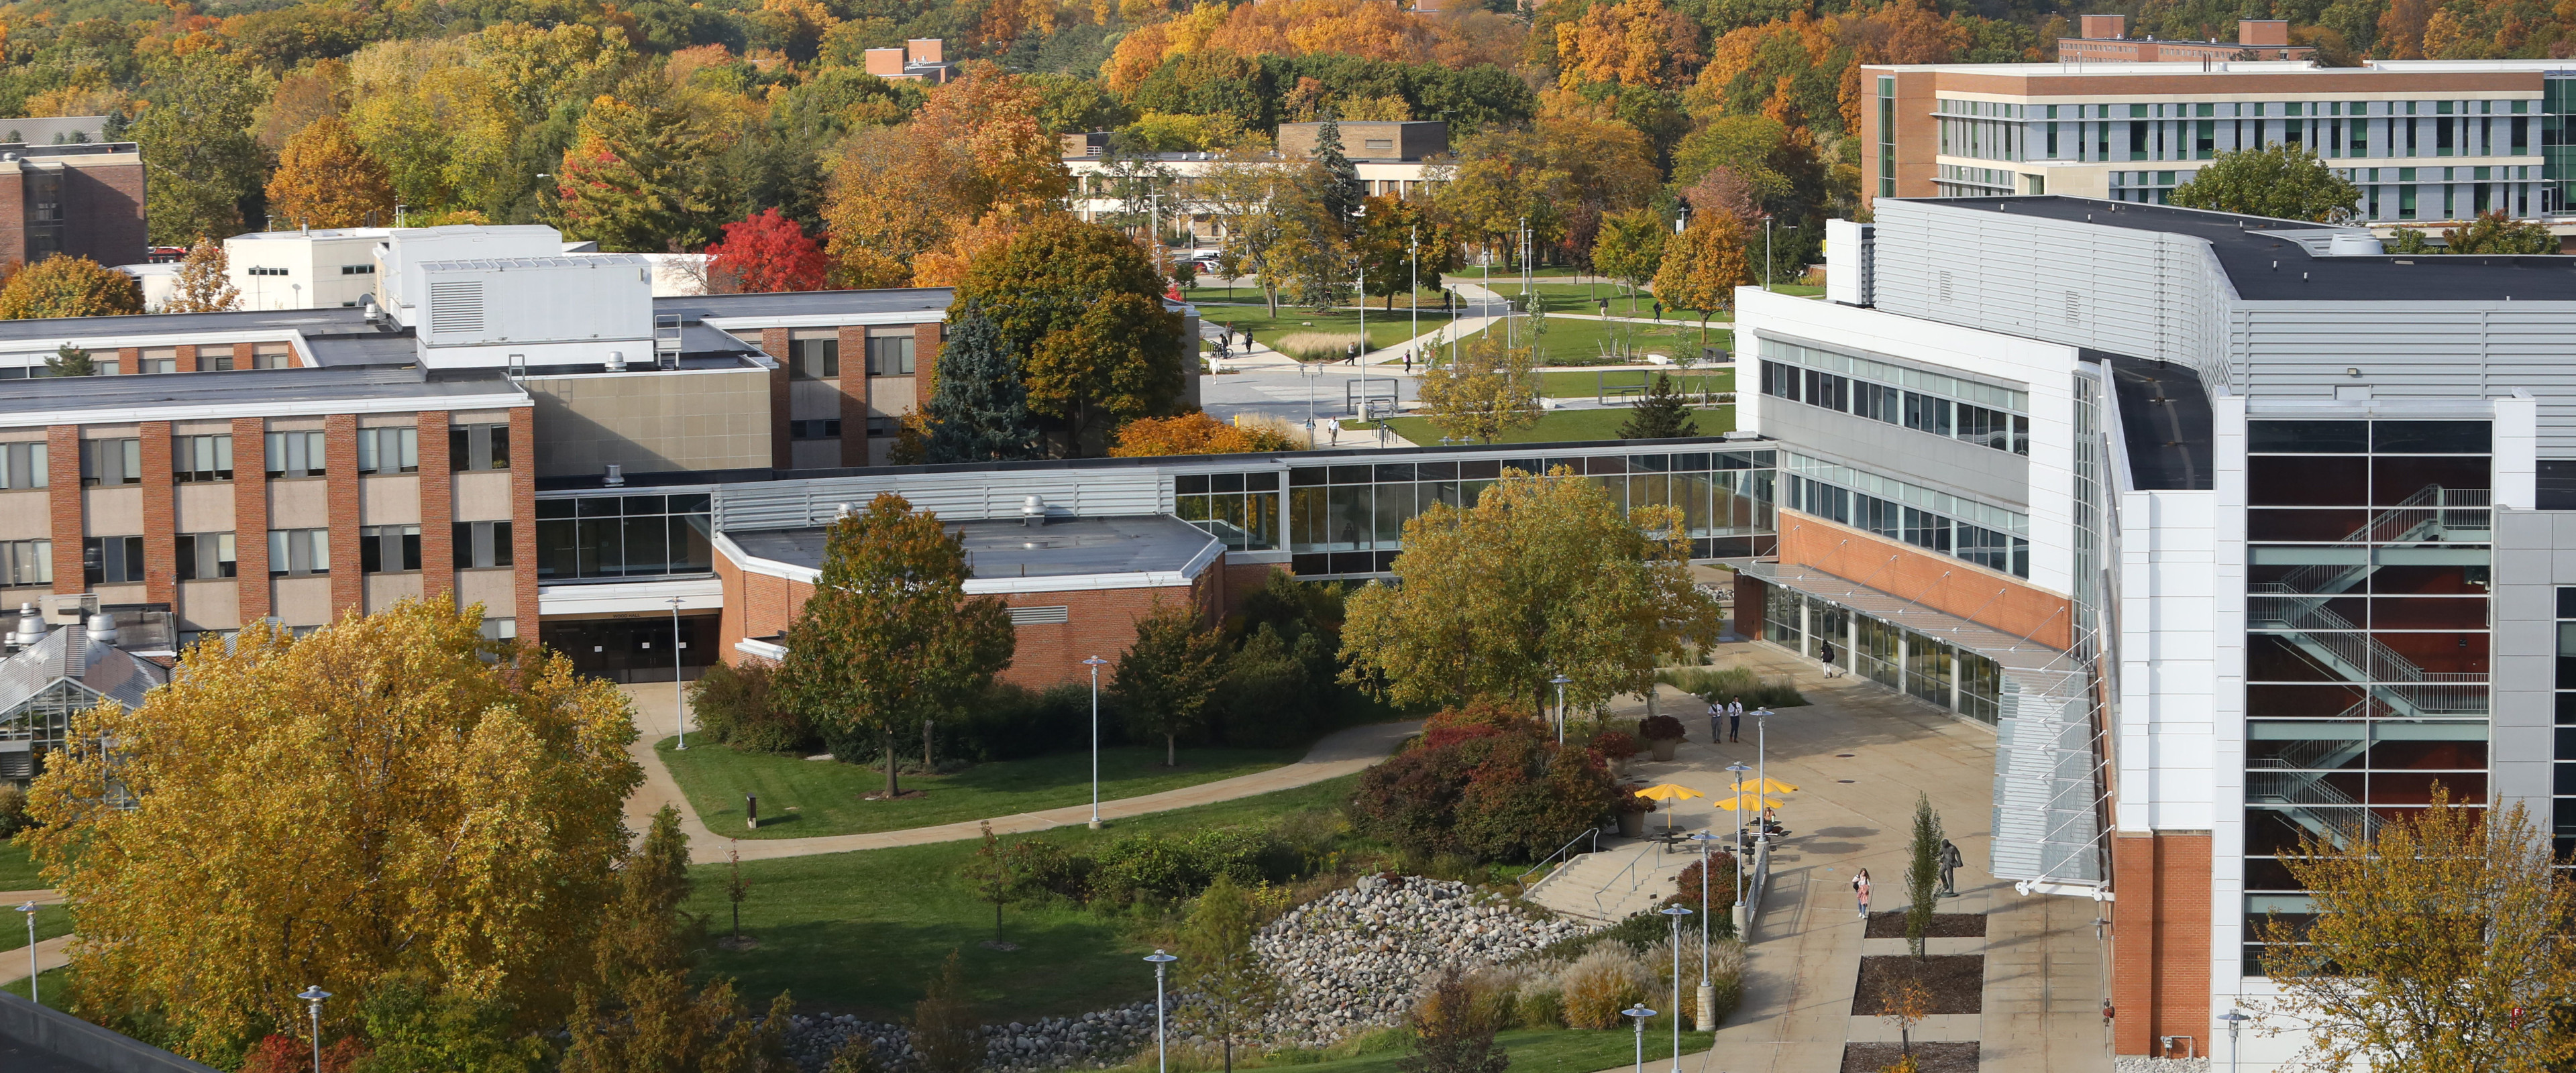 Aerial photo of WMU campus